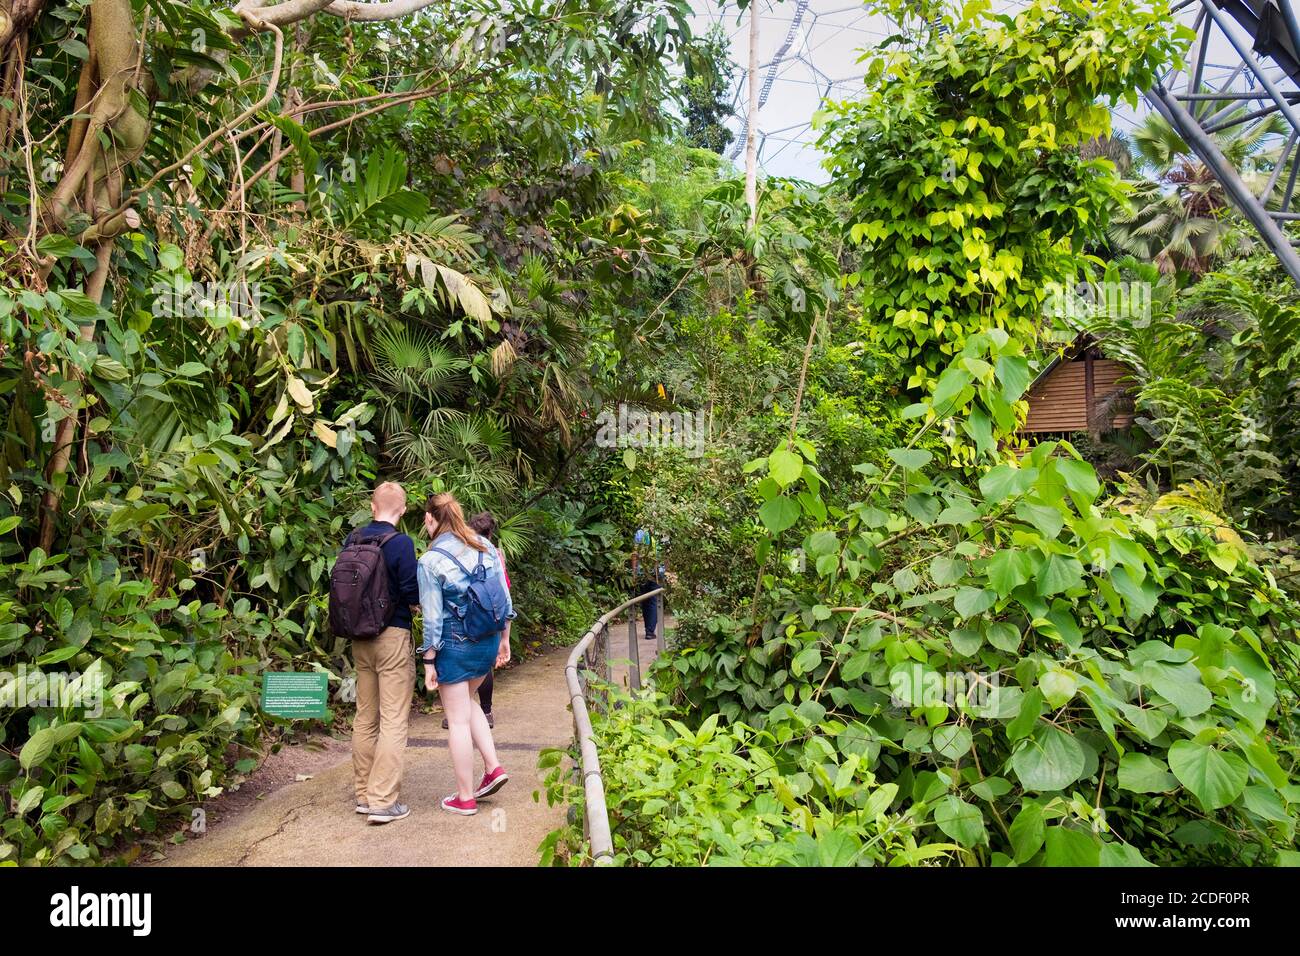 Visiteurs à l'intérieur des dômes biomes géodésiques de la forêt tropicale à l'Eden Project une attraction touristique dans les Cornouailles. Banque D'Images